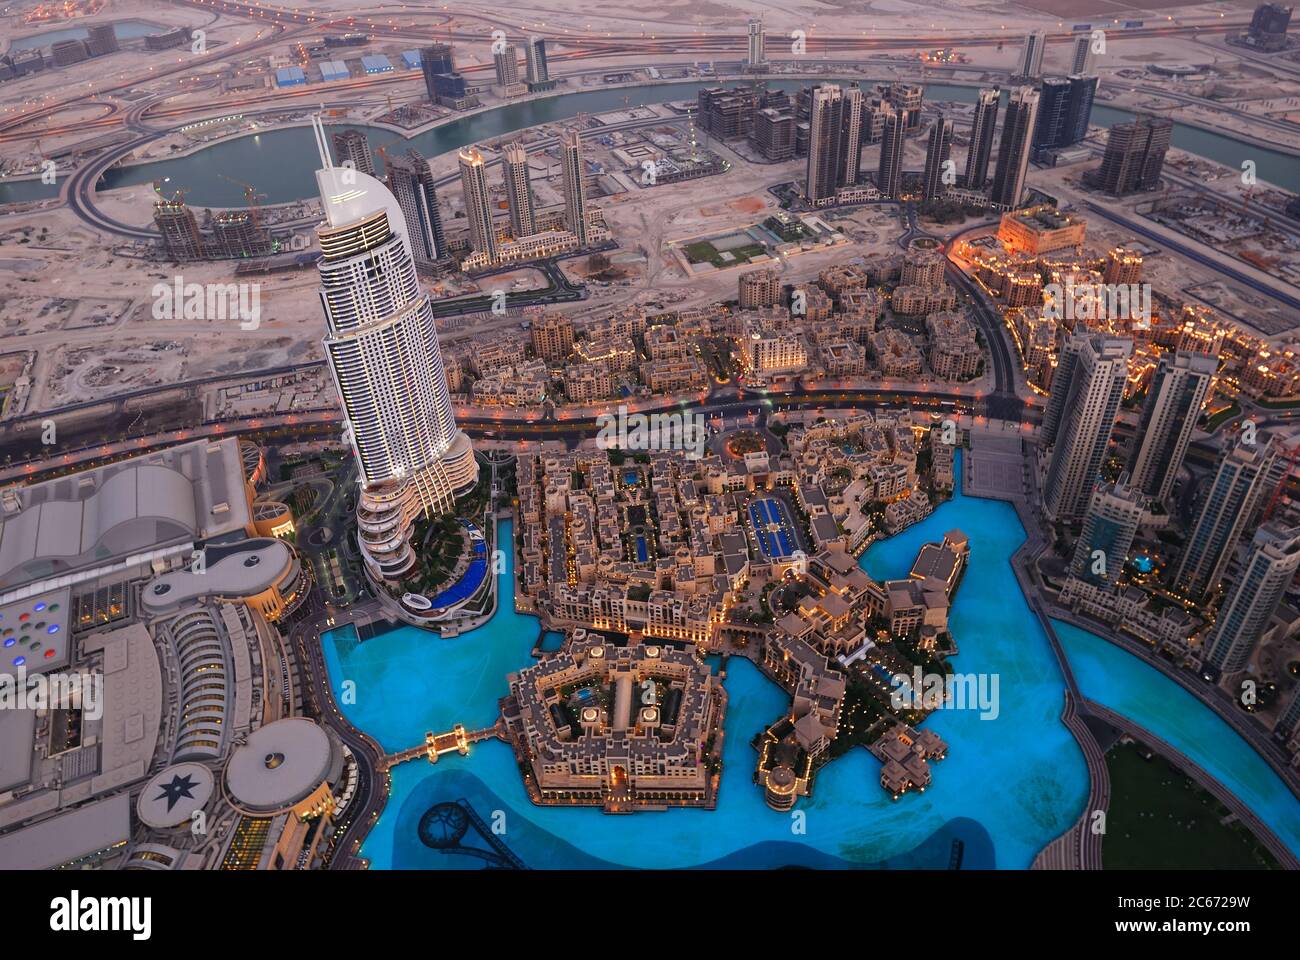 Реклама на бурдж халифа. Вечерний Бурдж Халифа. Дубай Вечерний Дубай. Птицы в Дубае. Смотровая площадка Бурдж Халифа.